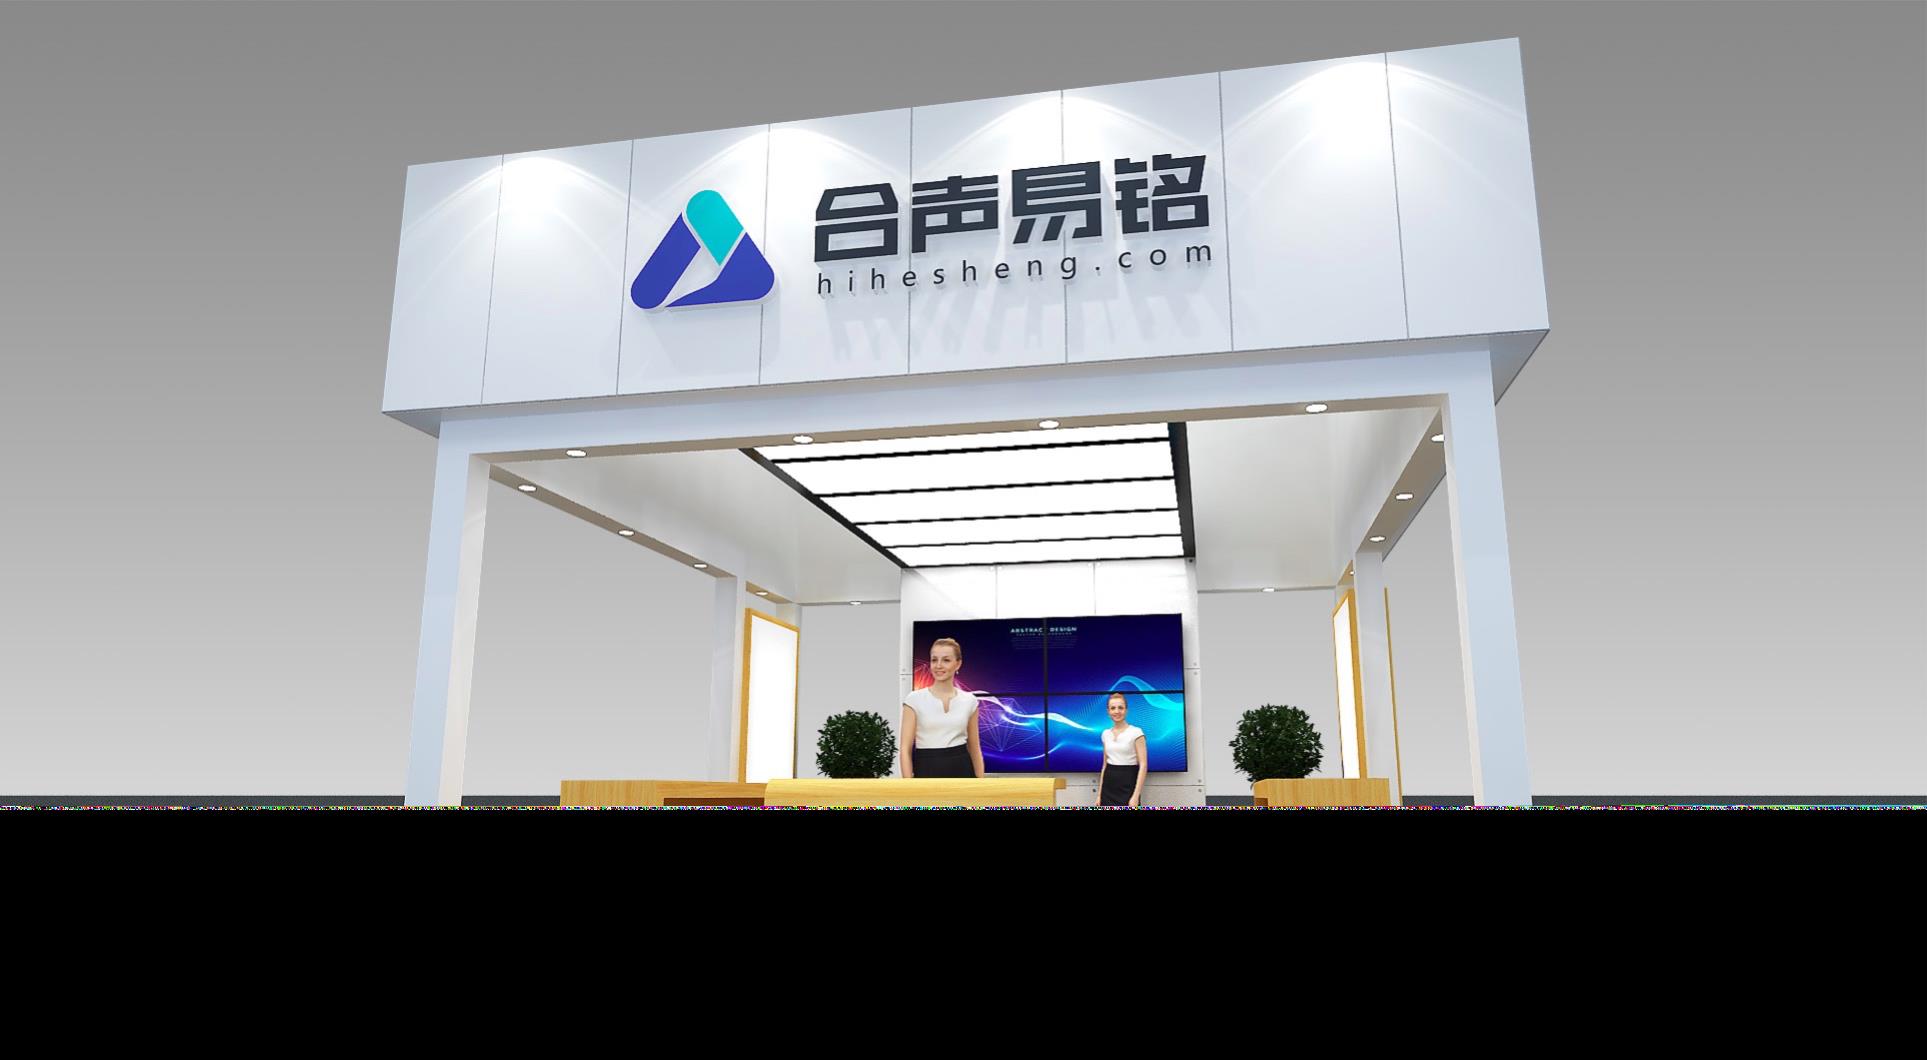 北京合声易铭信息技术有限公司将在2020ChinaJoyBTOB展区再续精彩